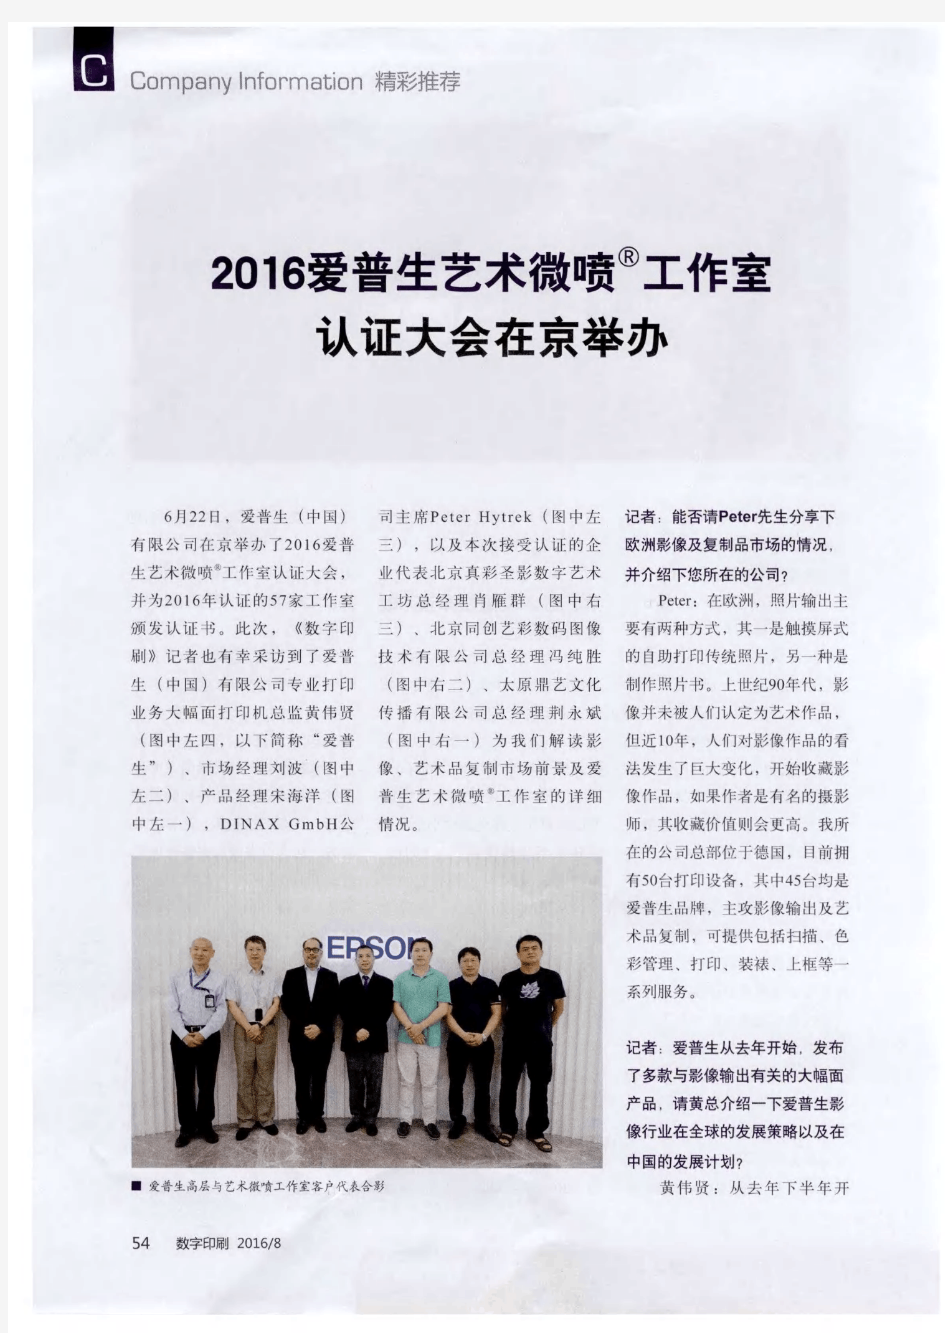 2016爱普生艺术微喷 工作室认证大会在京举办